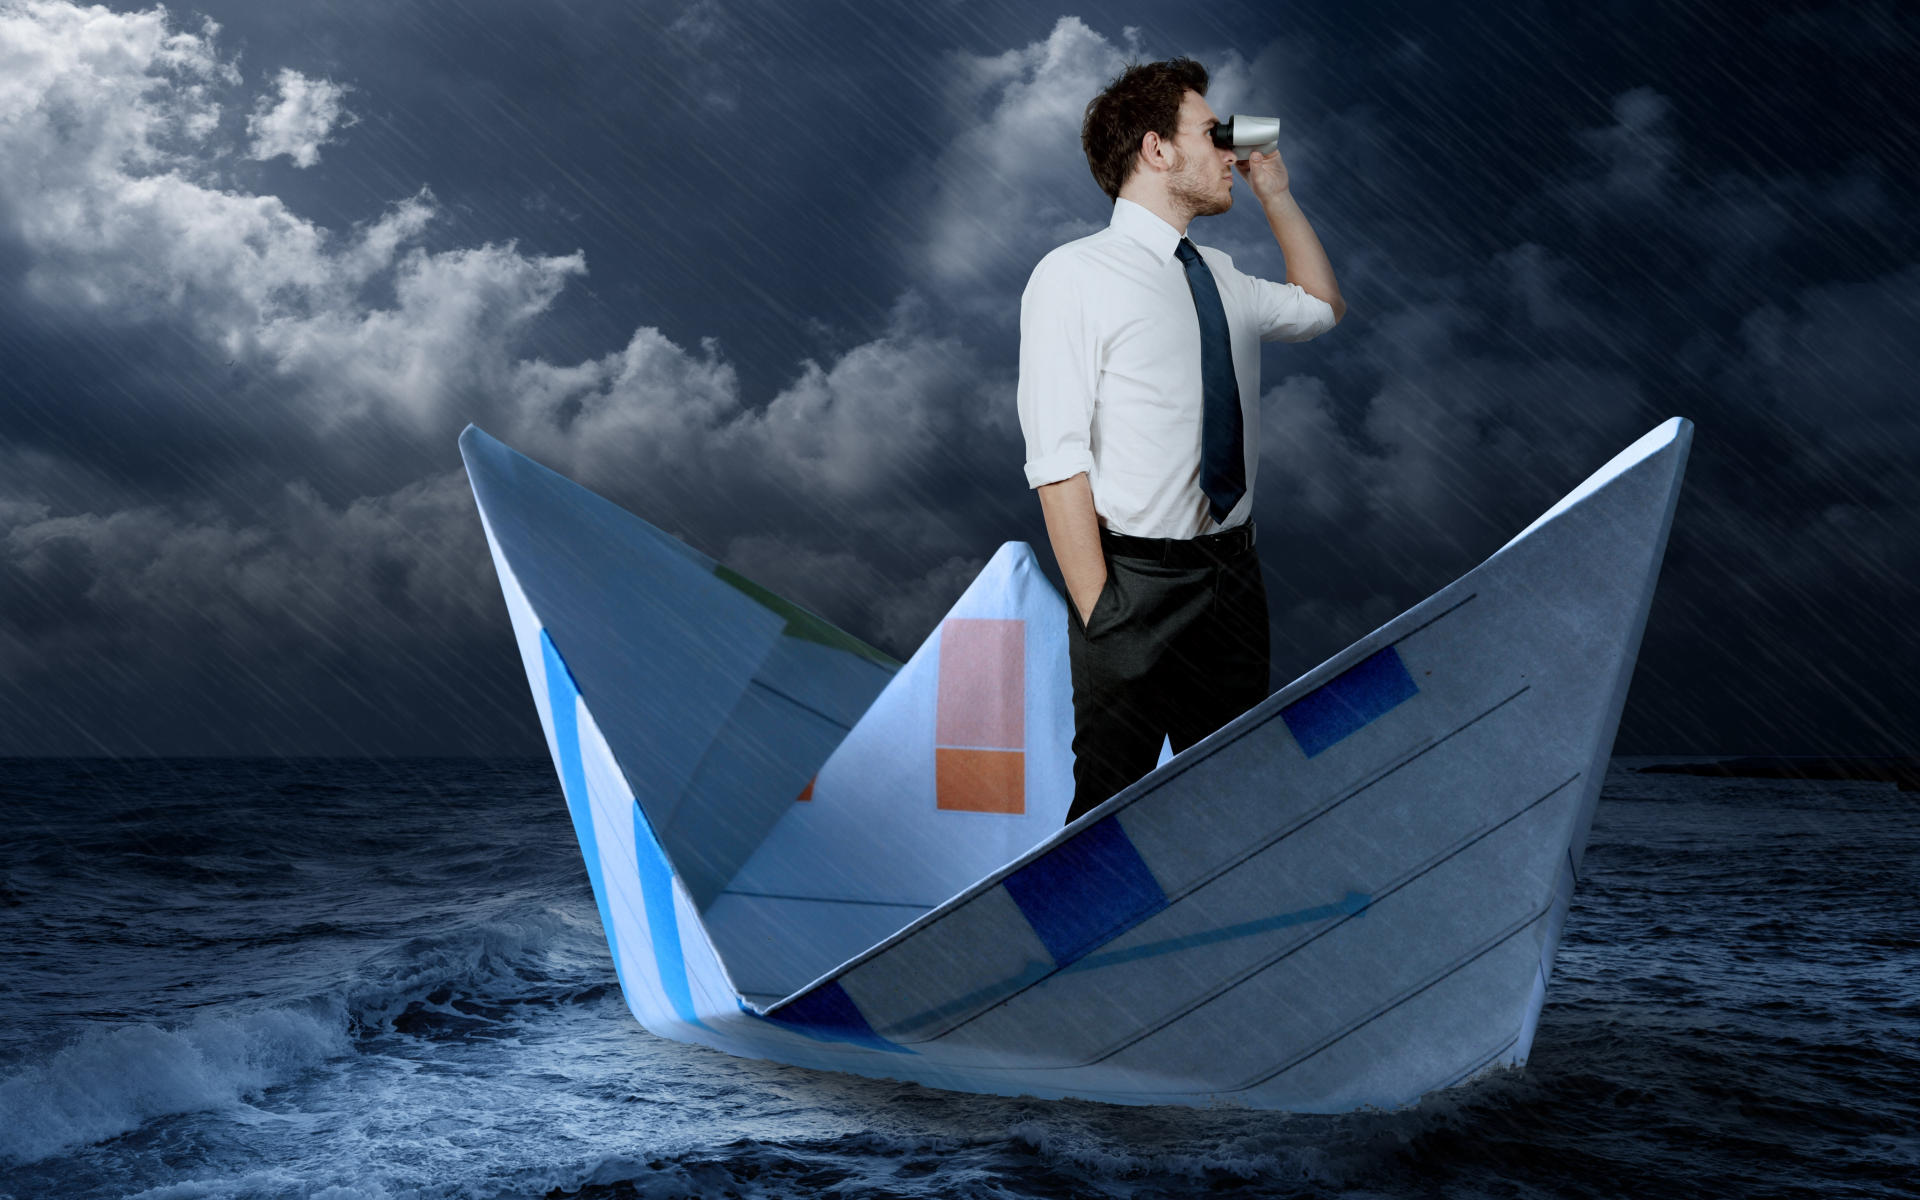 галстук, Море, шторм, мужчина, кораблик, дождь, бинокль